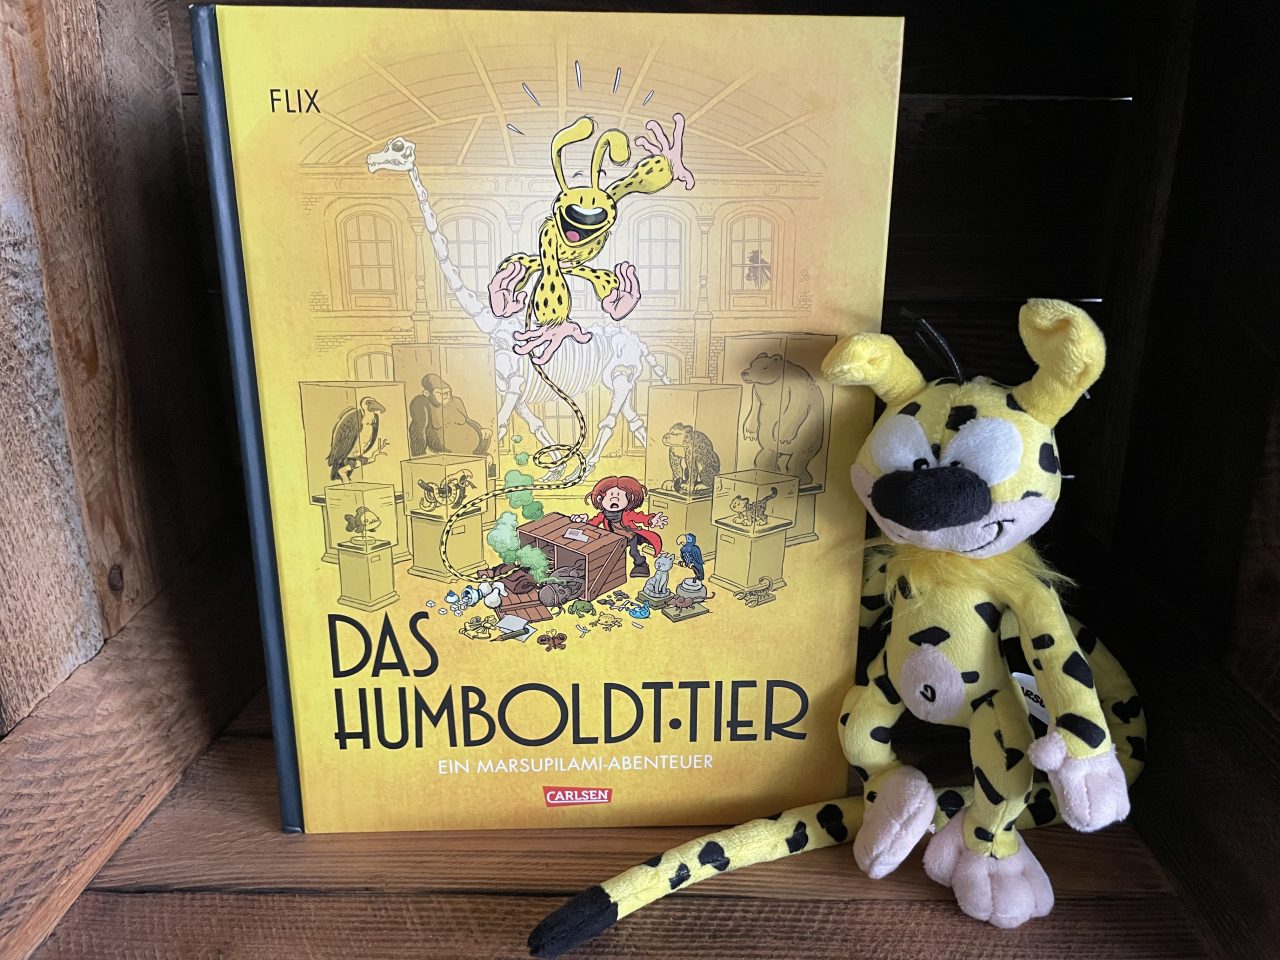 in einer Holzkiste steht das Comicbuch "Das Humboldt-Tier" ein Marsupilami-Abenteuer mit einer Plüschfigur daneben